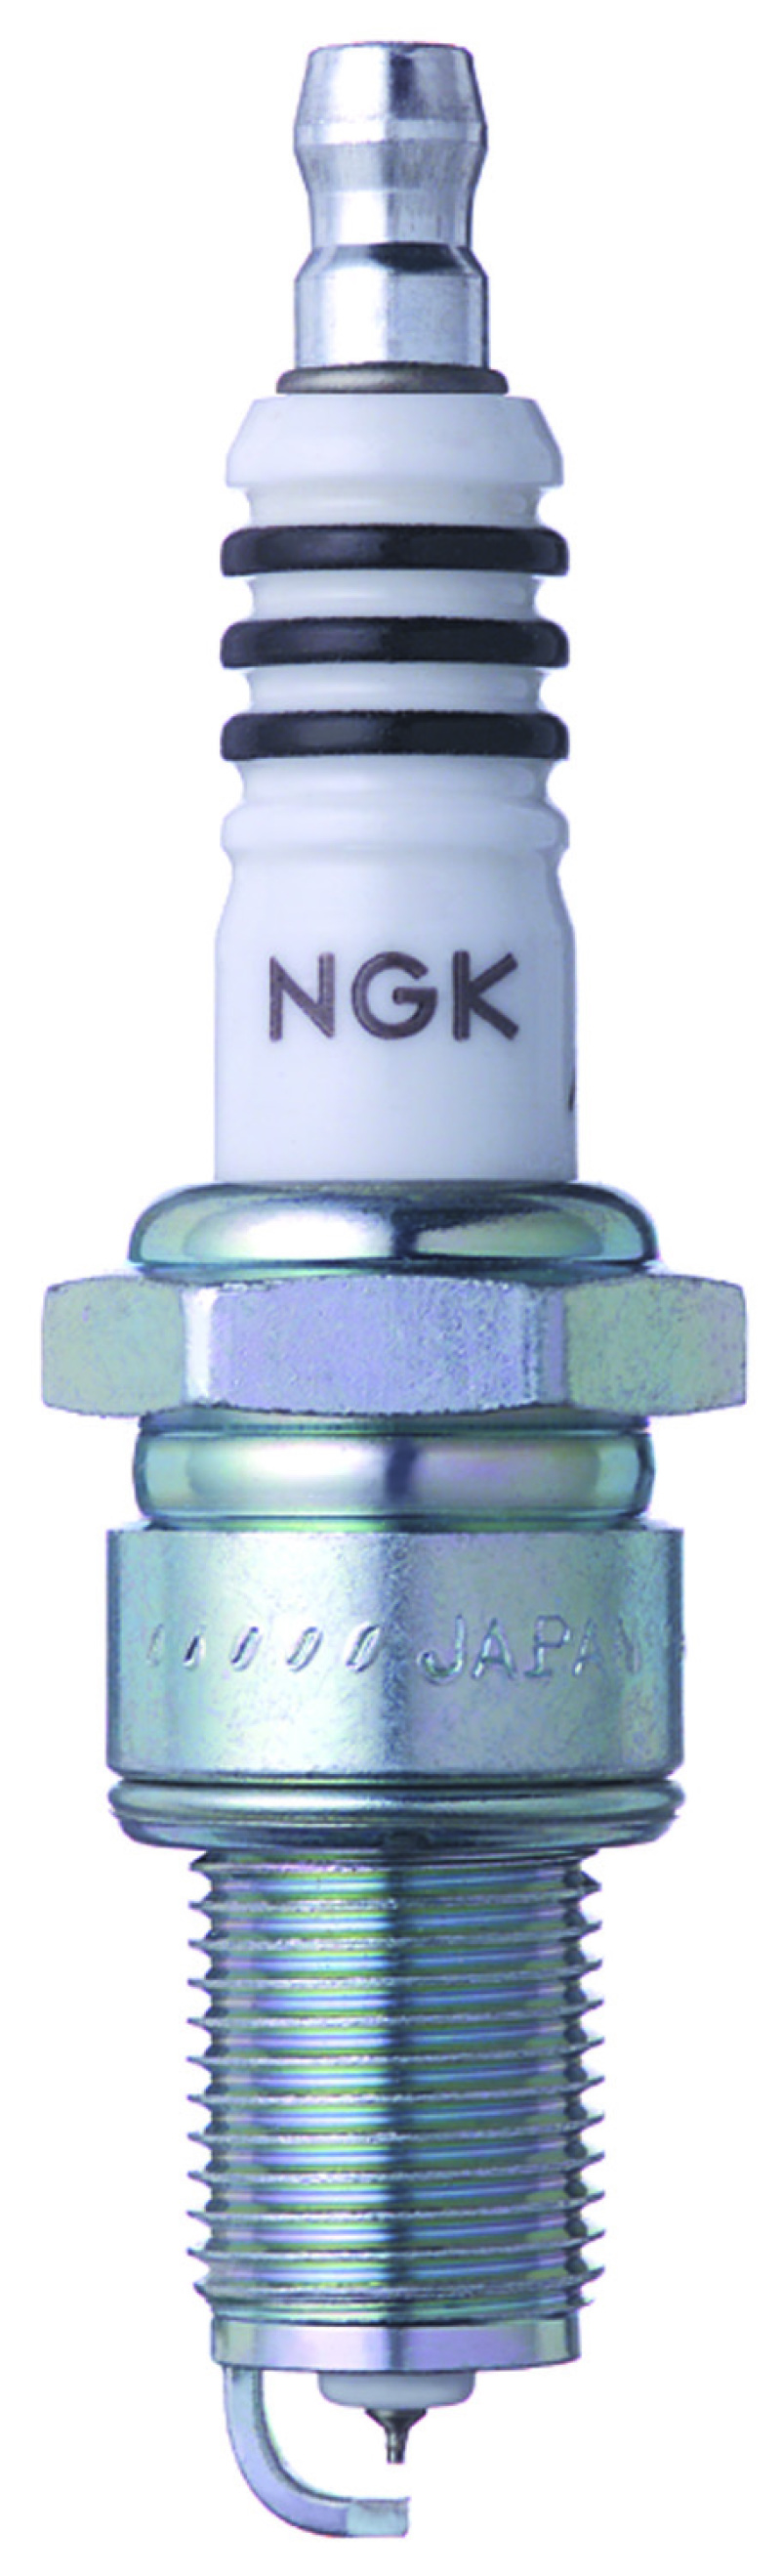 NGK Iridium IX Spark Plug Box of 4 (BPR10EIX) - 95236